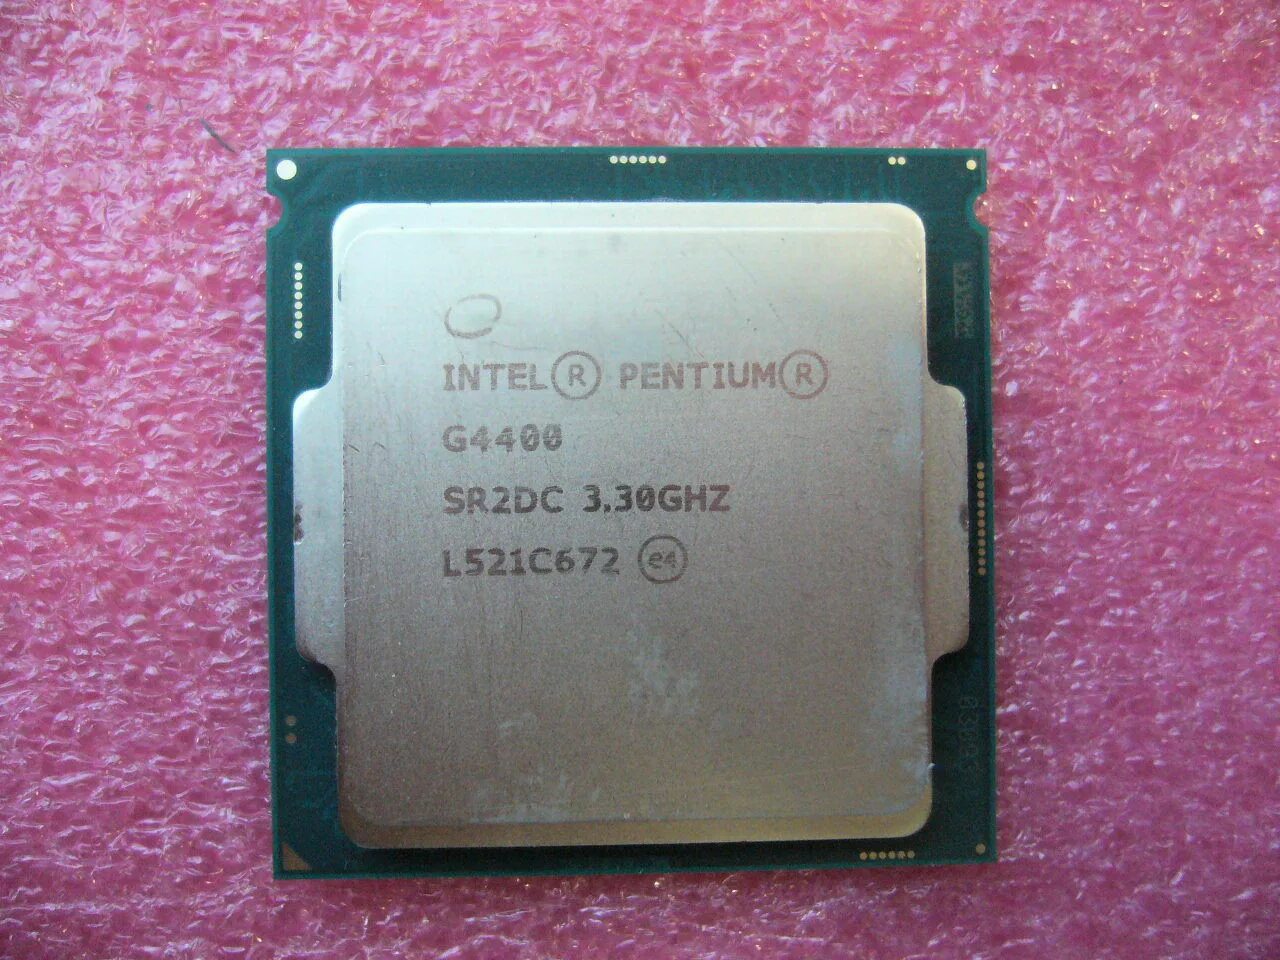 Процессор Intel Core i5-6400. Процессор Intel Core i5-6400t Skylake. Процессор - Intel Core i3 6100 3,70 GHZ. Intel Core i5 6700 2.7 GHZ.